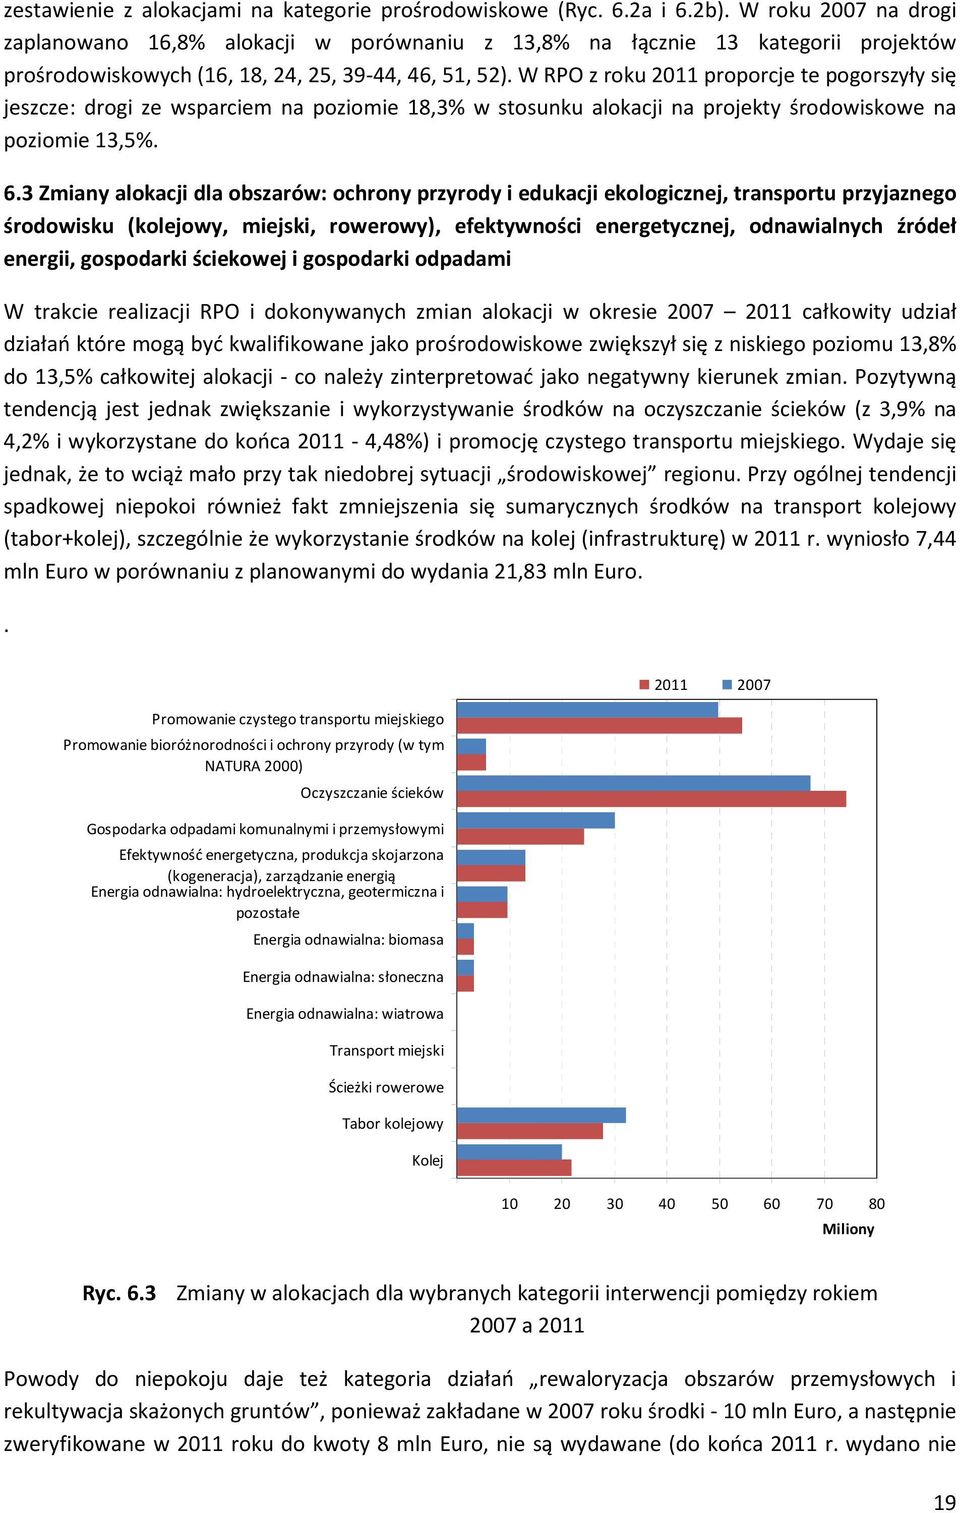 W RPO z roku 2011 proporcje te pogorszyły się jeszcze: drogi ze wsparciem na poziomie 18,3% w stosunku alokacji na projekty środowiskowe na poziomie 13,5%. 6.